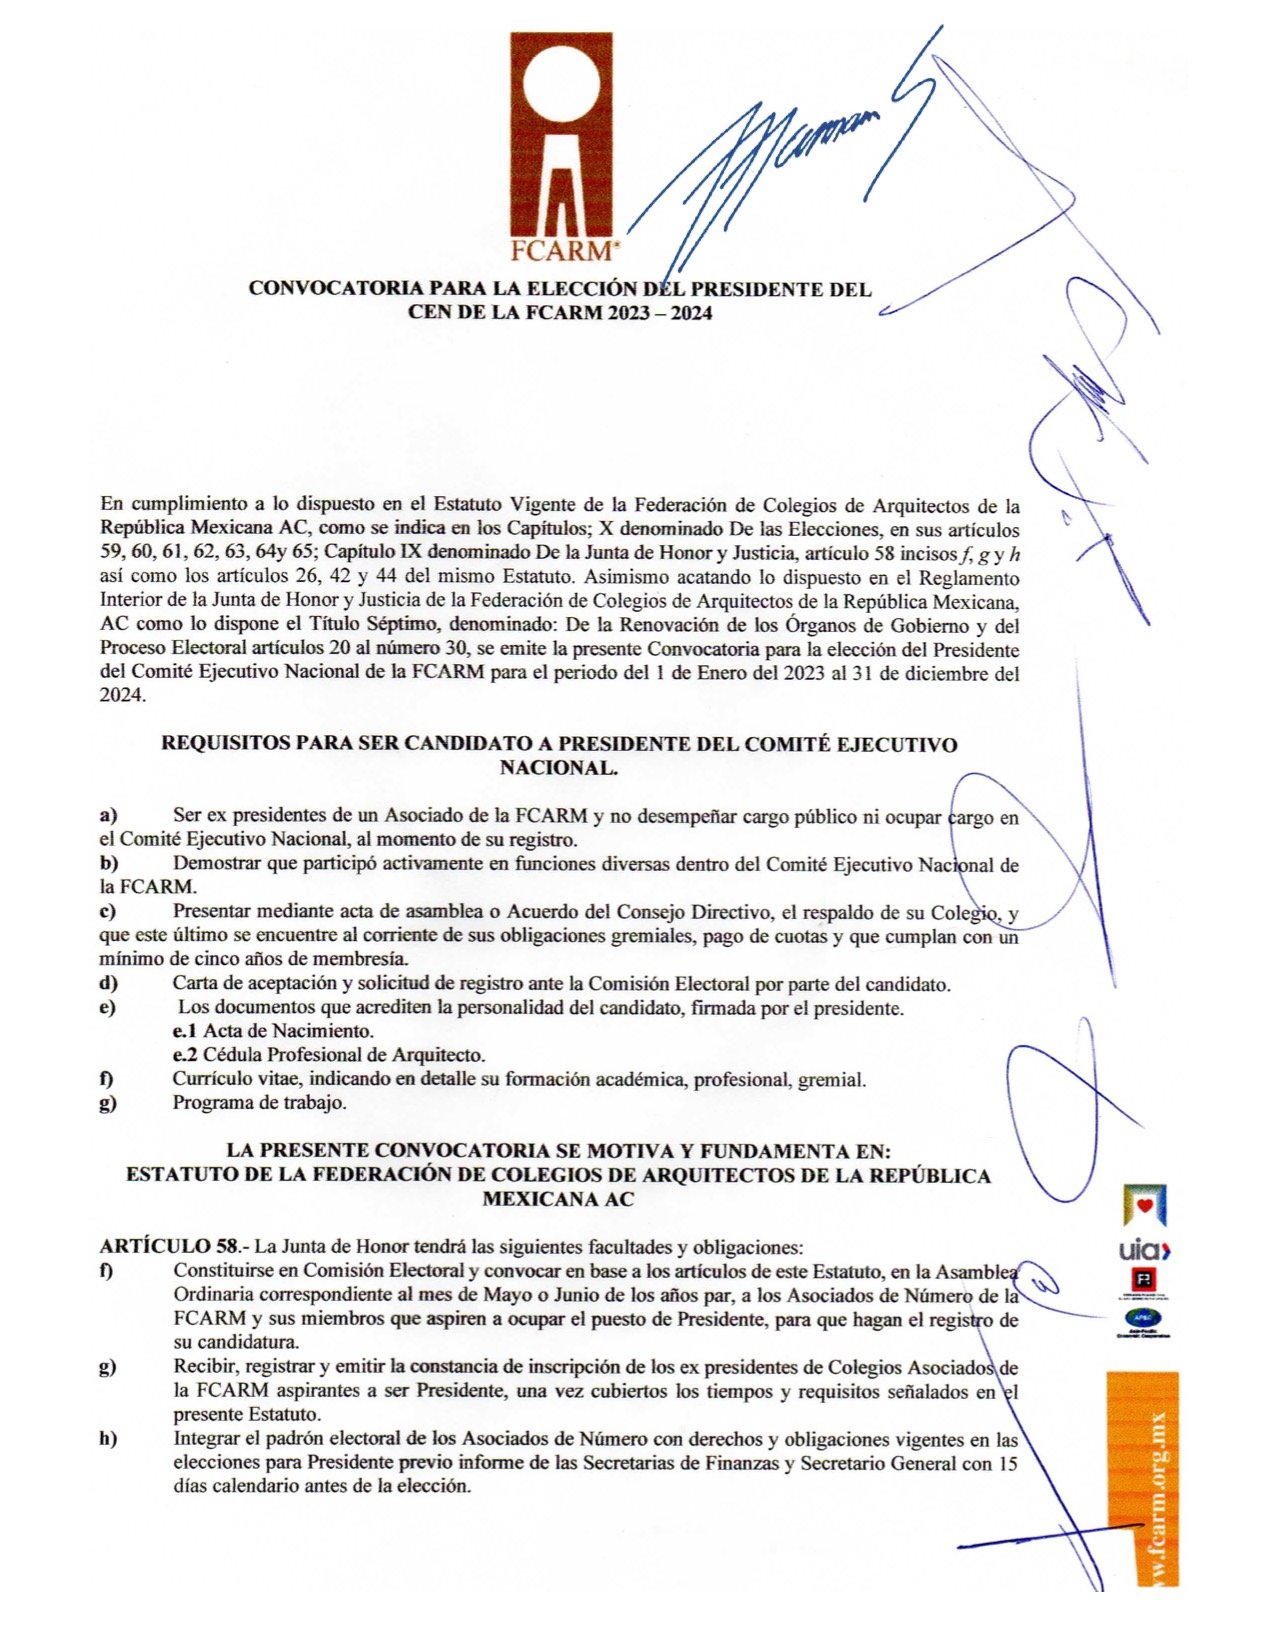 CONVOCATORIA ELECCION DE PRESIDENTE DEL CEN FCARM 2023-2024 1.jpeg